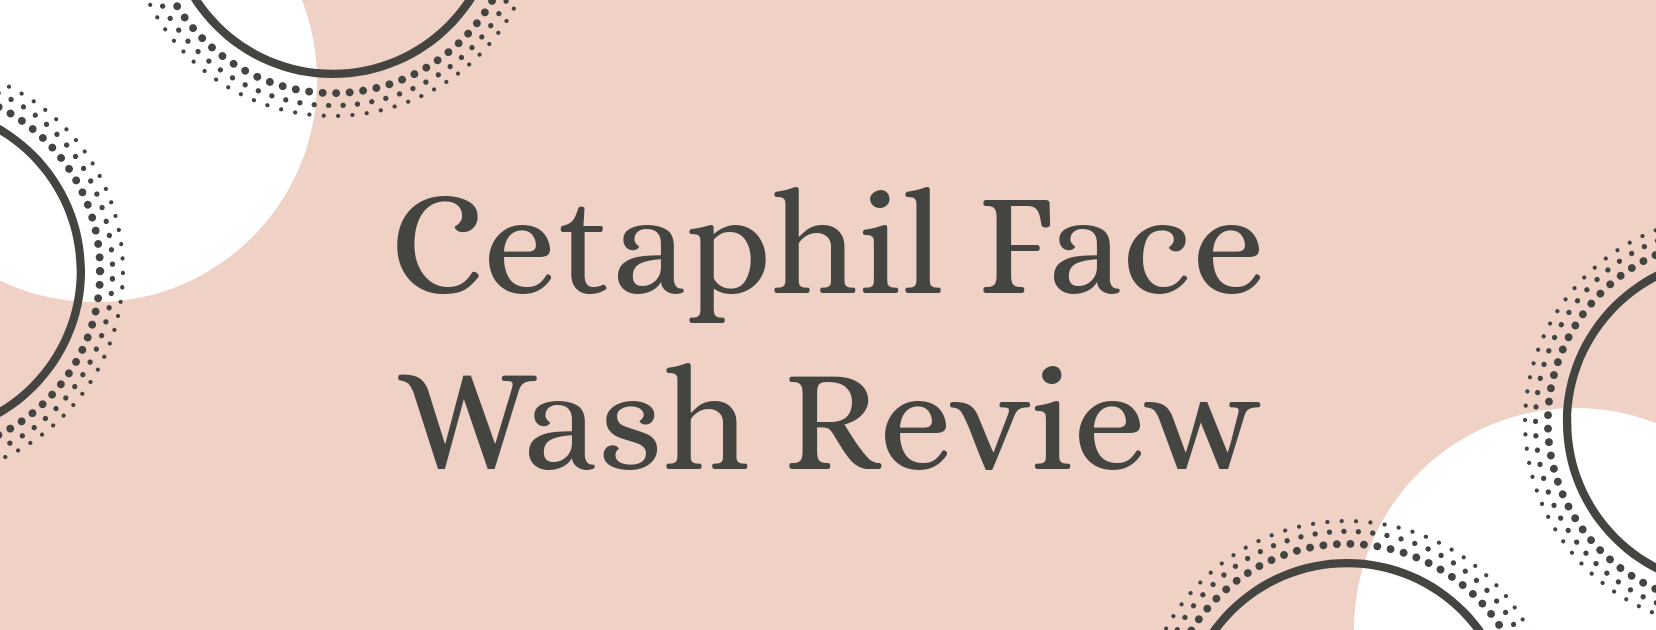 Cetaphil Face Wash Review